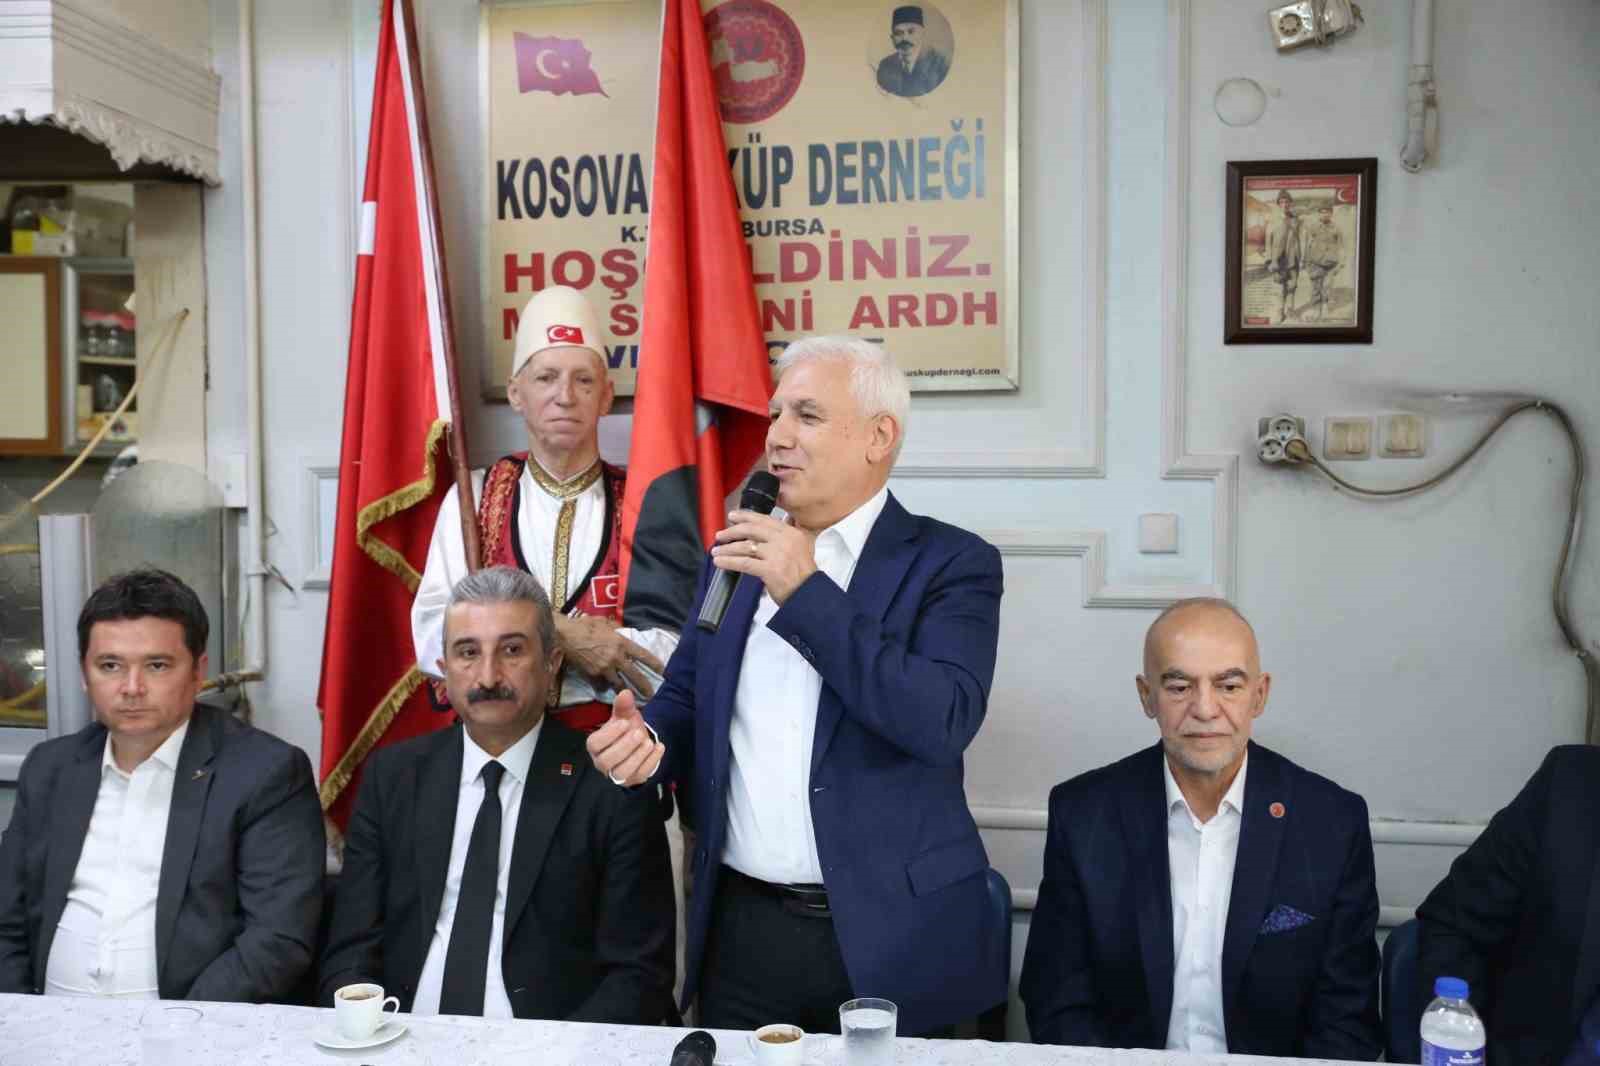 Bursa Büyükşehir Belediye Başkan Adayı Mustafa Bozbey: “Bursa’da kentsel dönüşüm yapılmadı”